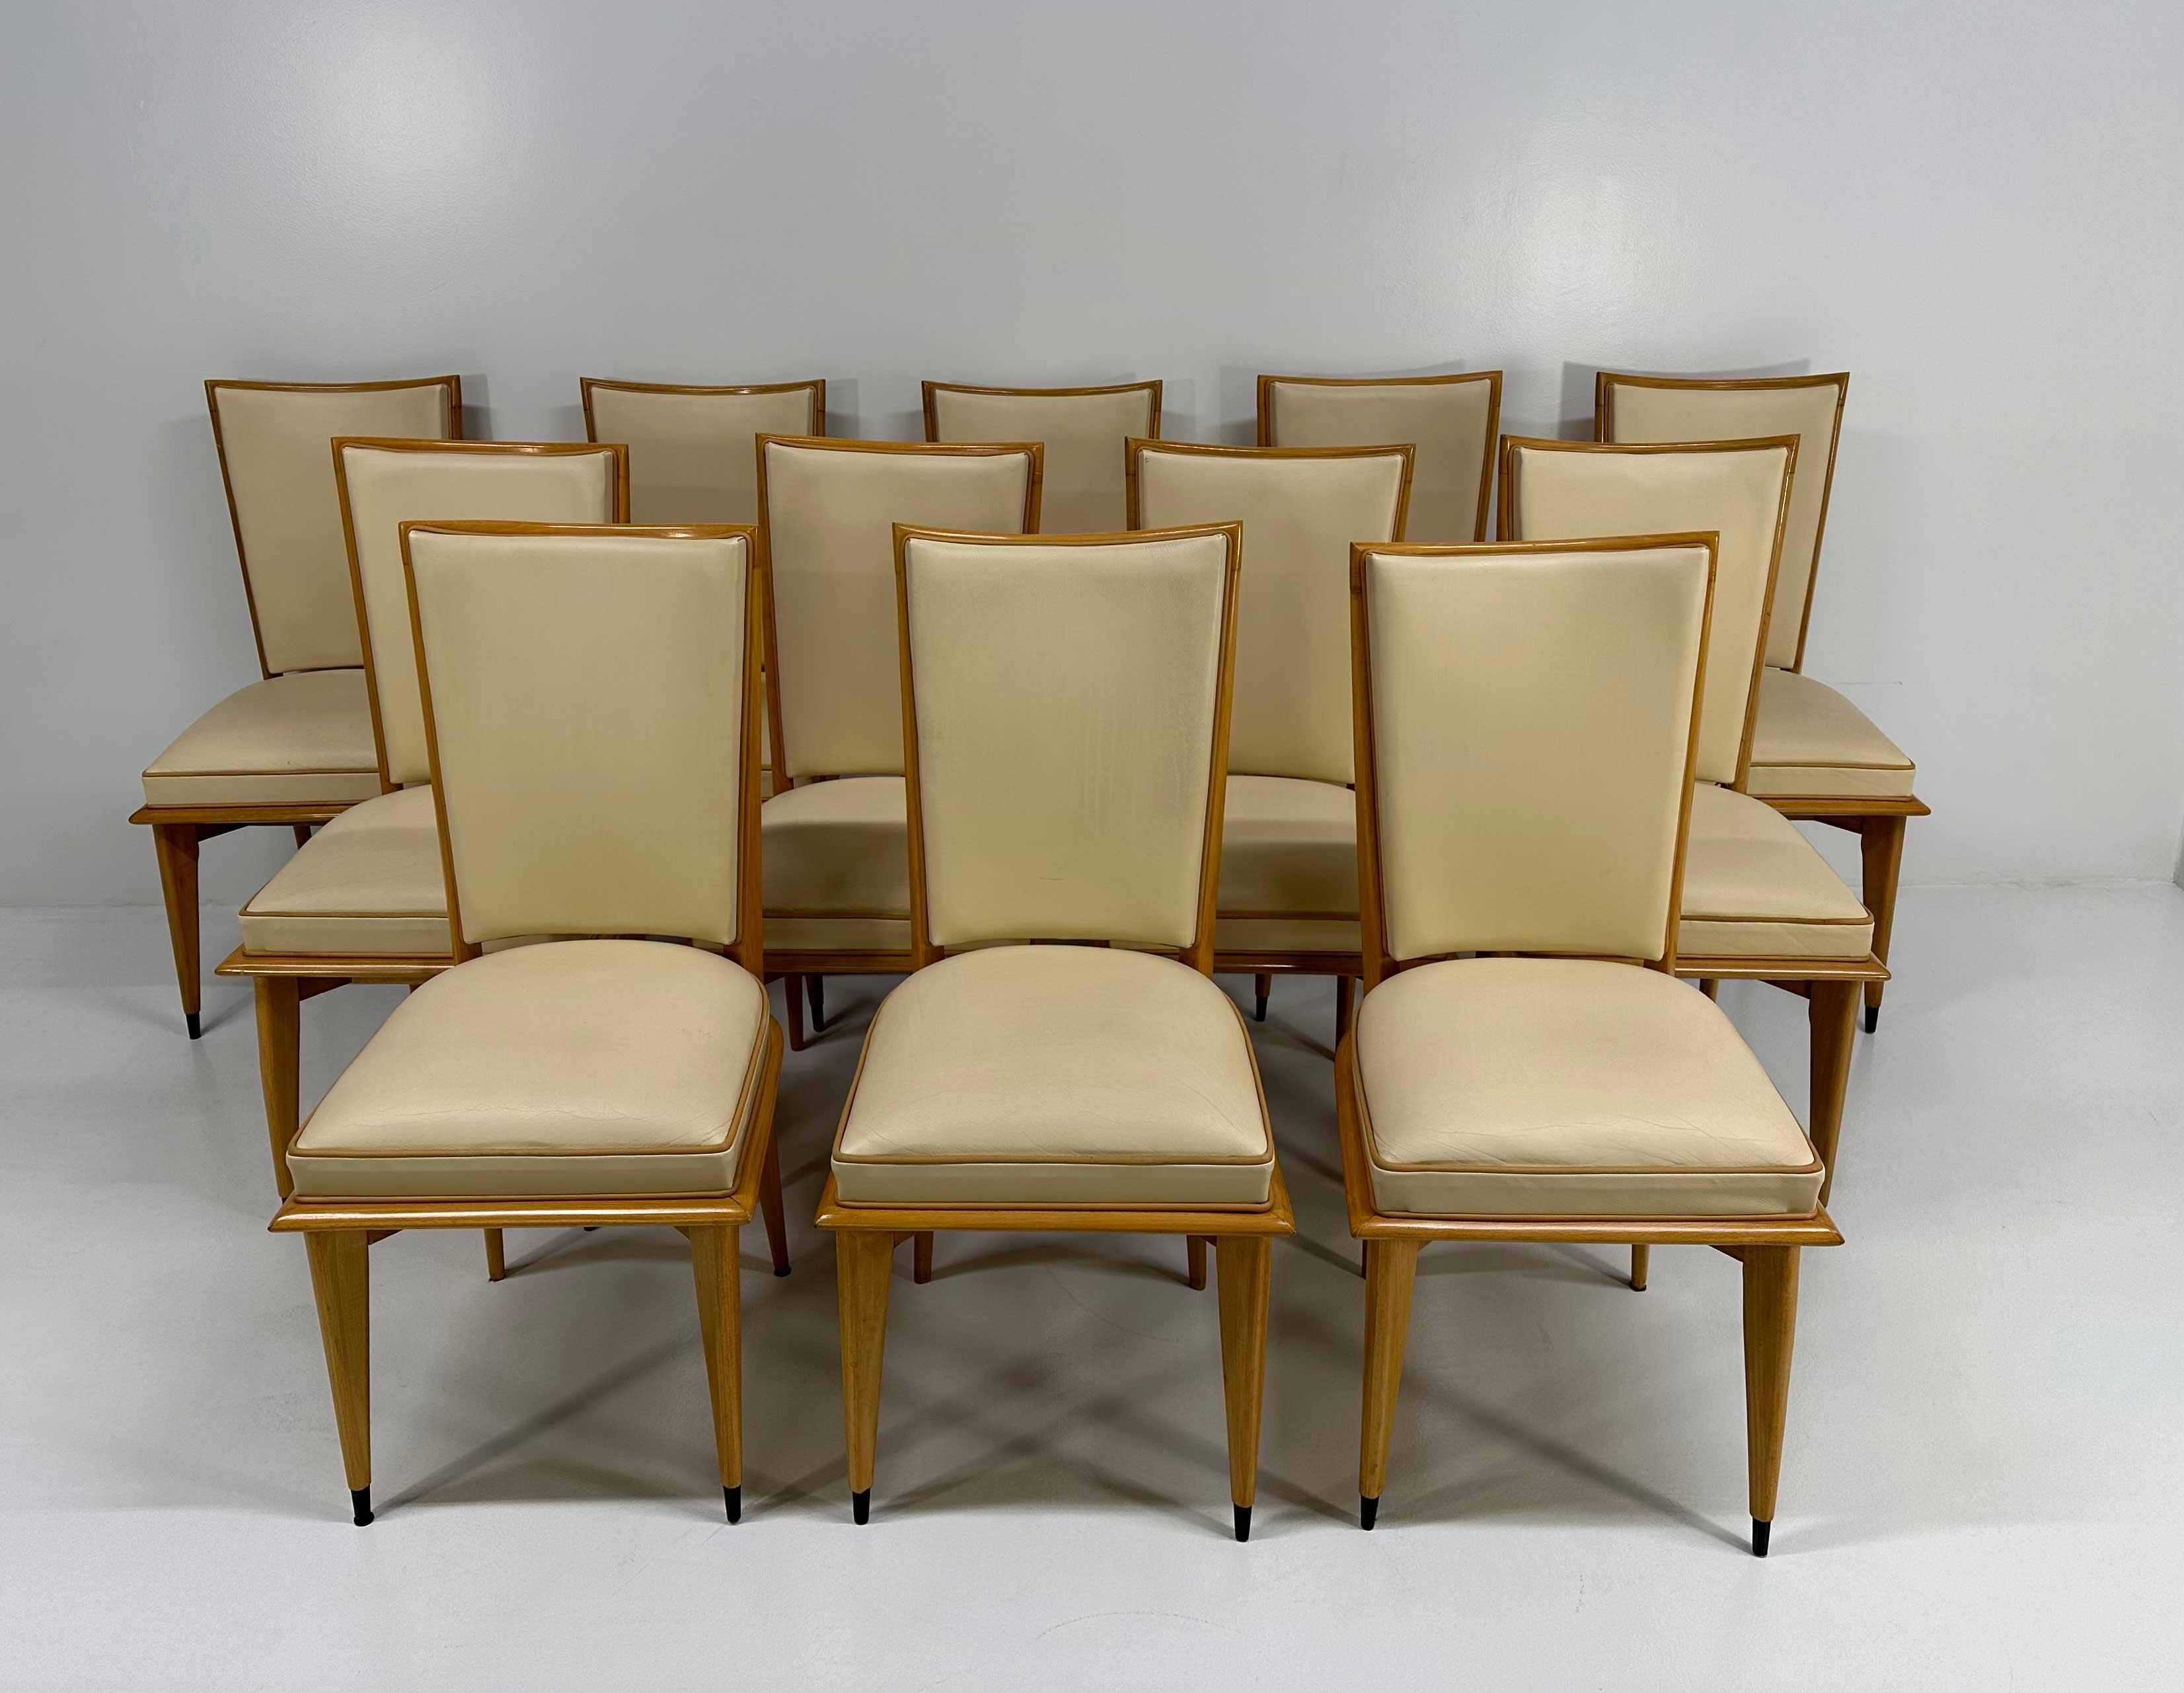 Cet ensemble de 12 chaises Art déco a été produit en France dans les années 1930. Ils ont une structure en érable et sont recouverts de deux couleurs de cuir différentes : crème et marron clair pour les profils. 
Les extrémités des pieds sont